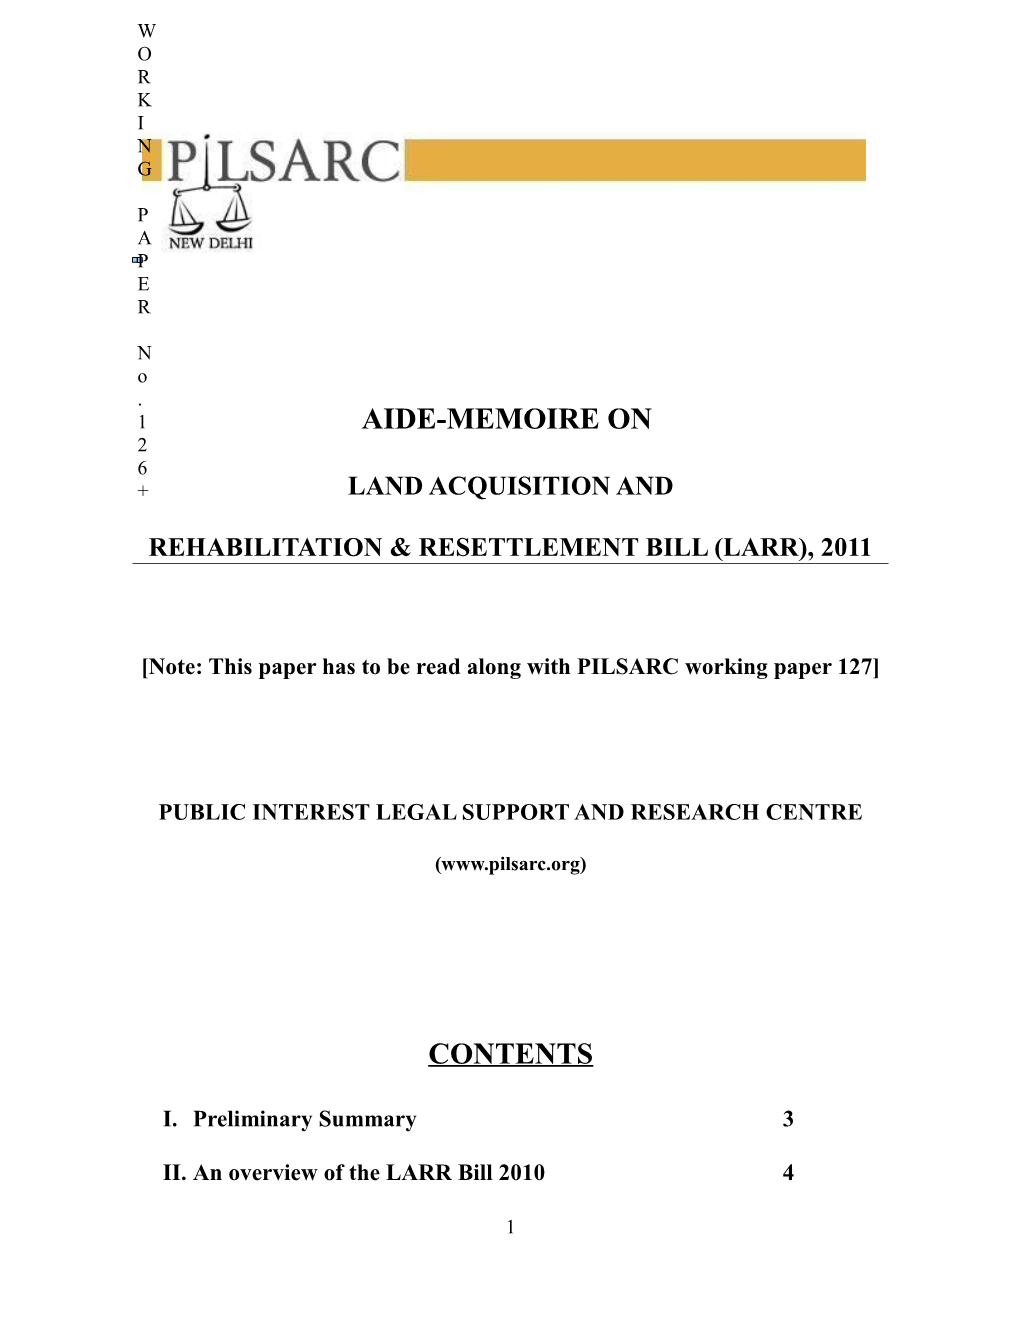 Rehabilitation & Resettlement Bill (Larr), 2011